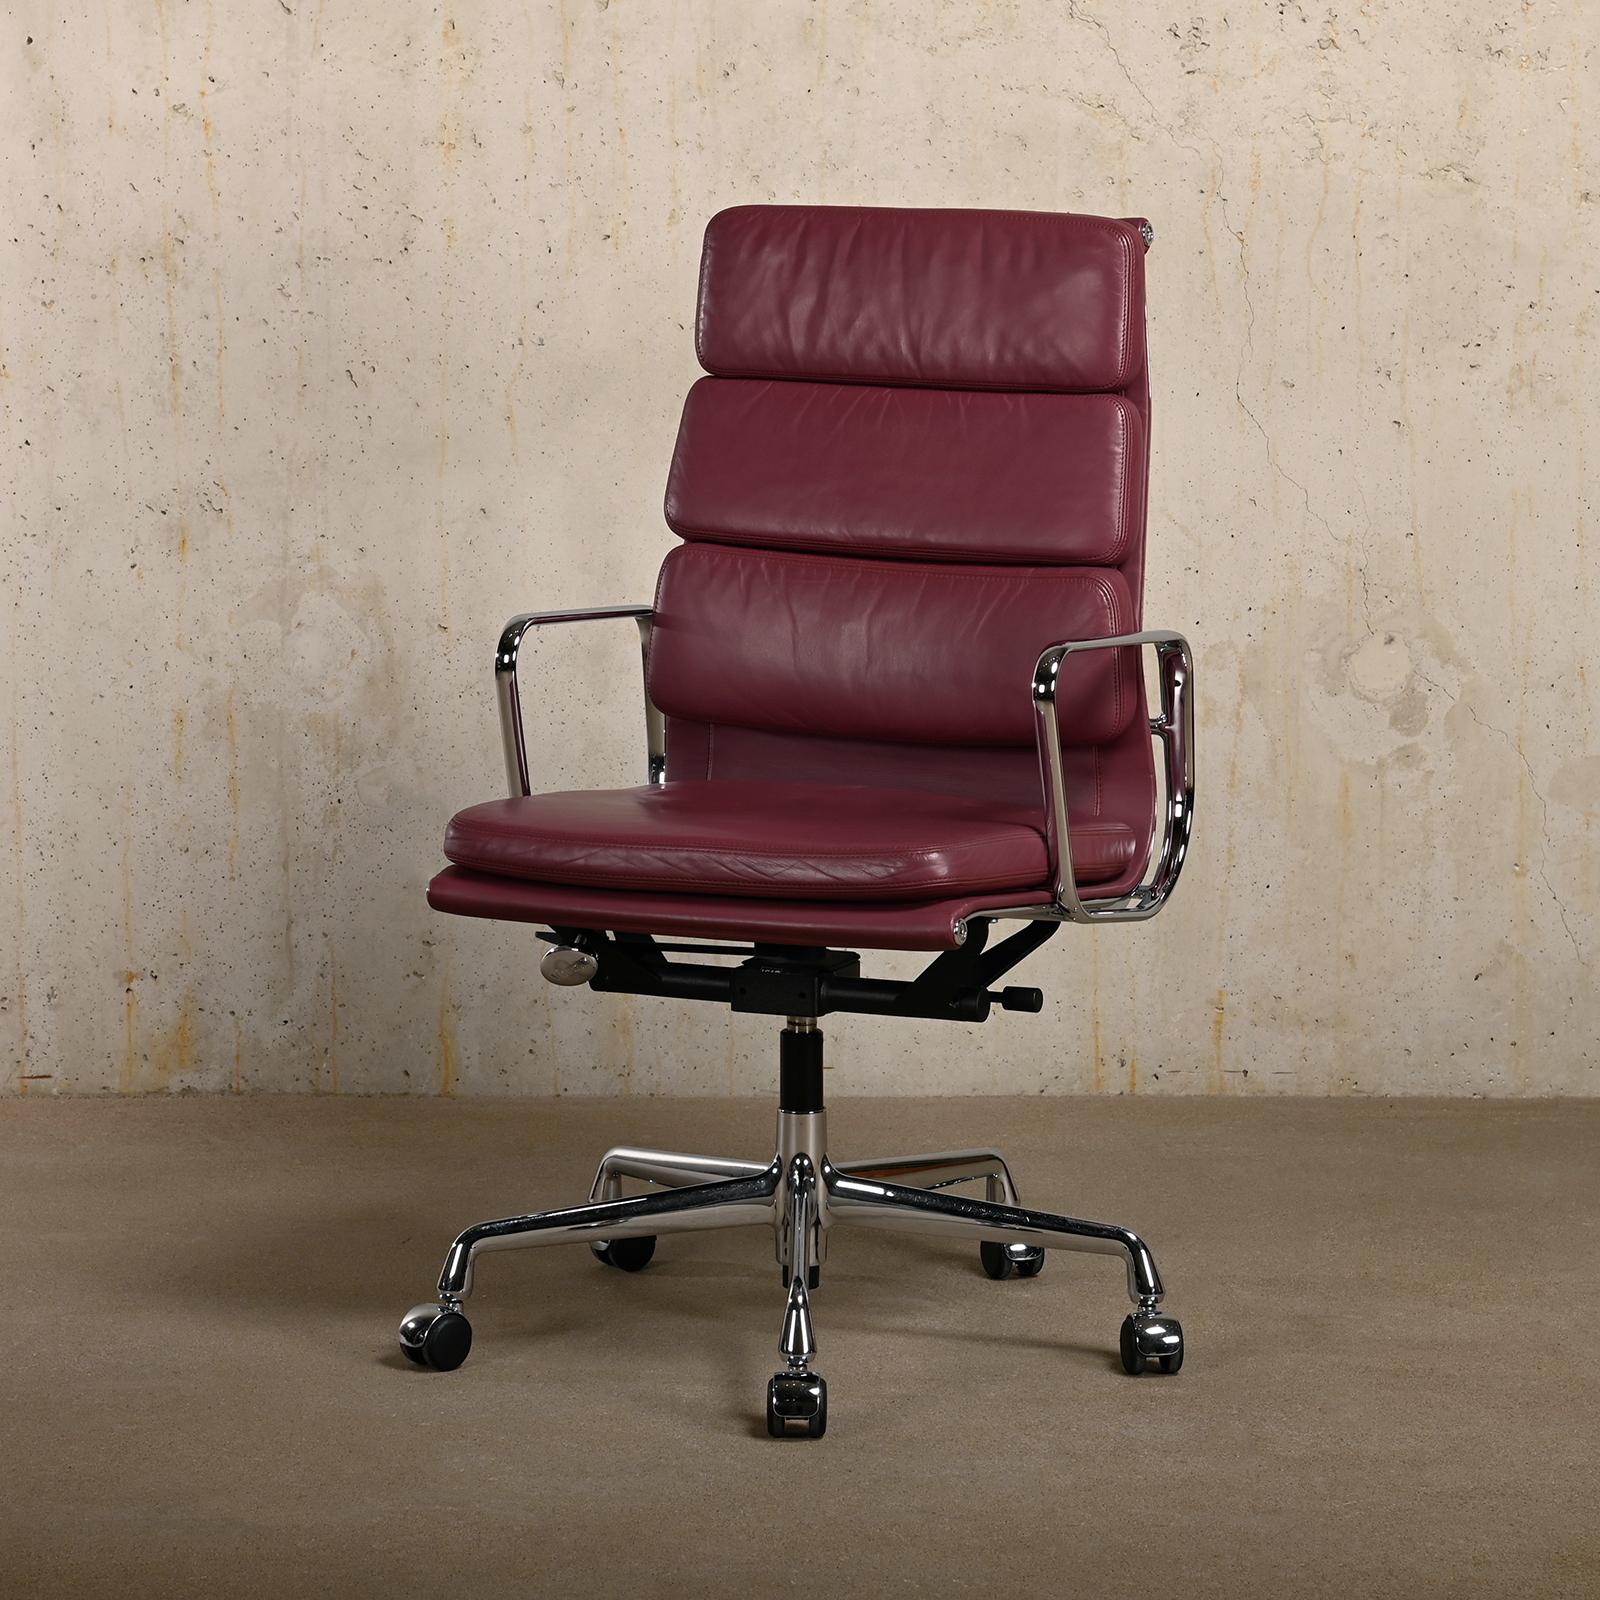 Schöner Bürostuhl EA219 aus der legendären Aluminium-Serie von Charles & Ray Eames für Herman Miller (US) / Vitra (EU). Die Lederpolster, die Höhenverstellung und der Kipp-/Schwenkmechanismus, der an das Gewicht des Benutzers angepasst werden kann,